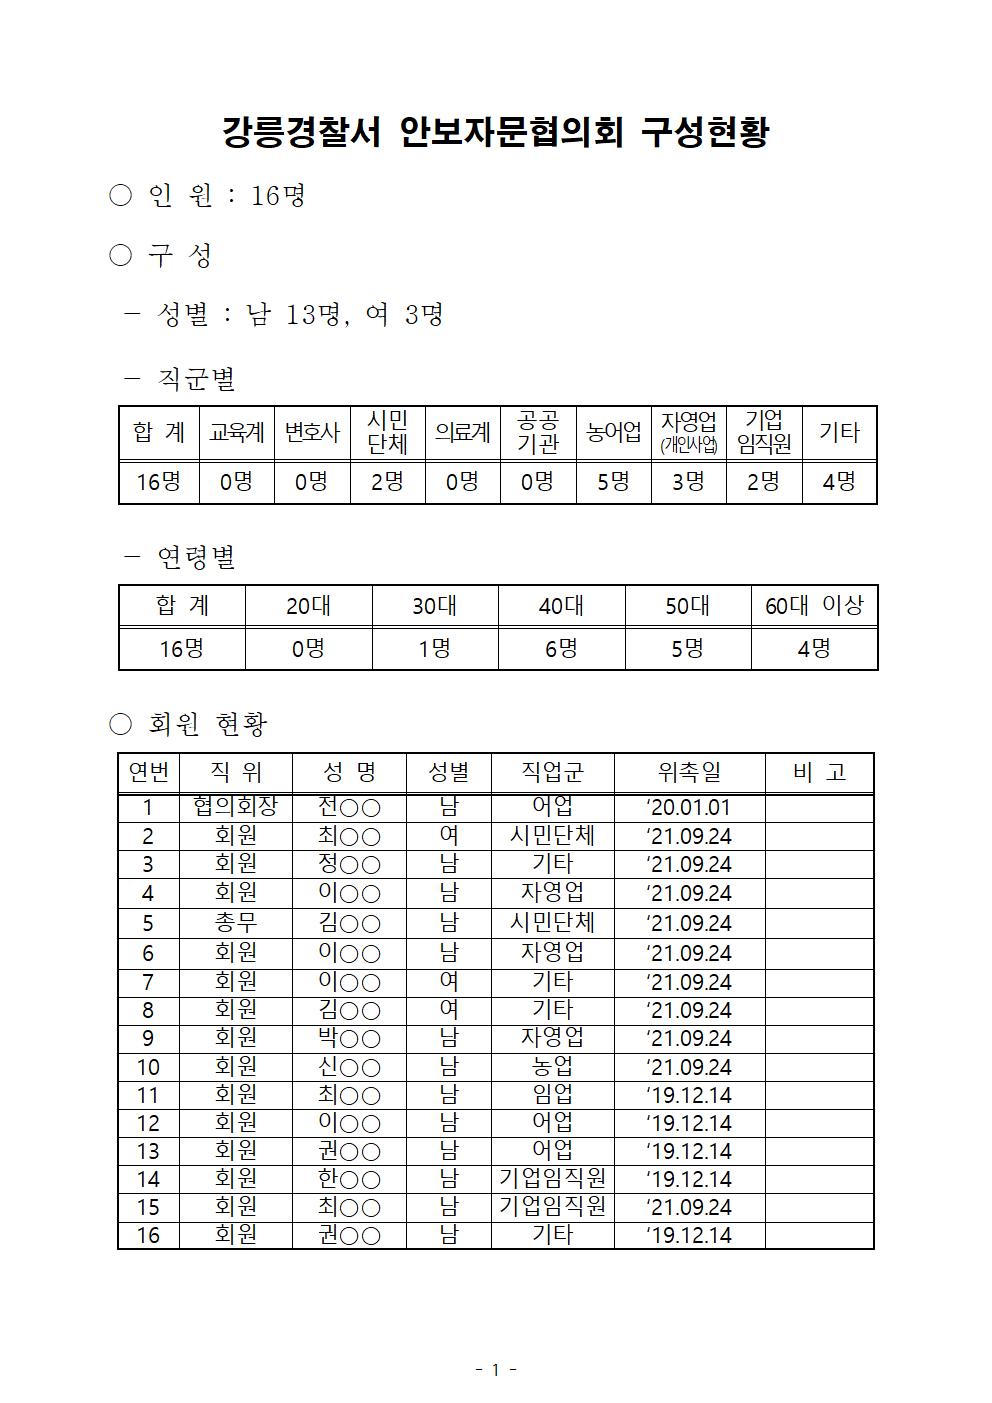 강릉경찰서 안보자문협의회 구성현황(9.24)-강릉서 안보자문협의회 현황(9.24)